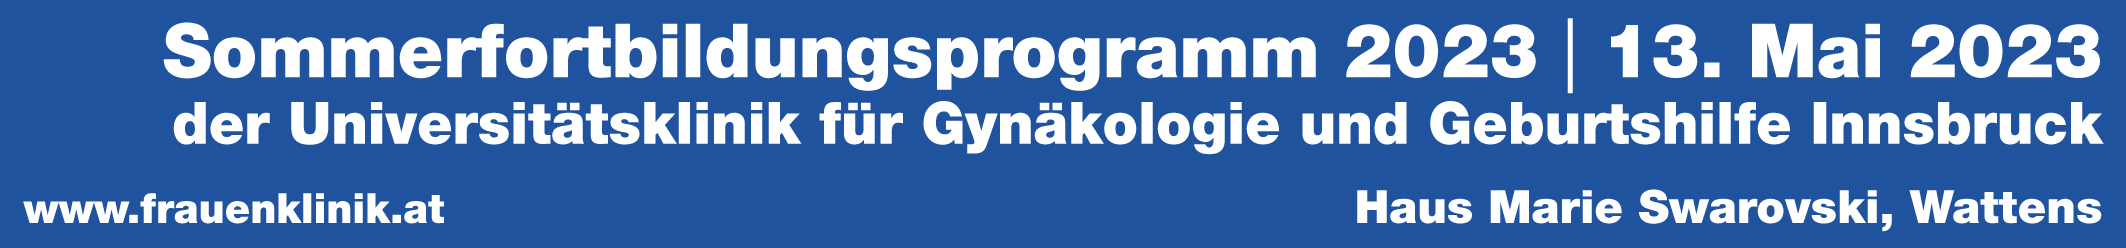 Sommerfortbildung der Univ.-Klinik für Gynäkologie und Geburtshilfe Innsbruck